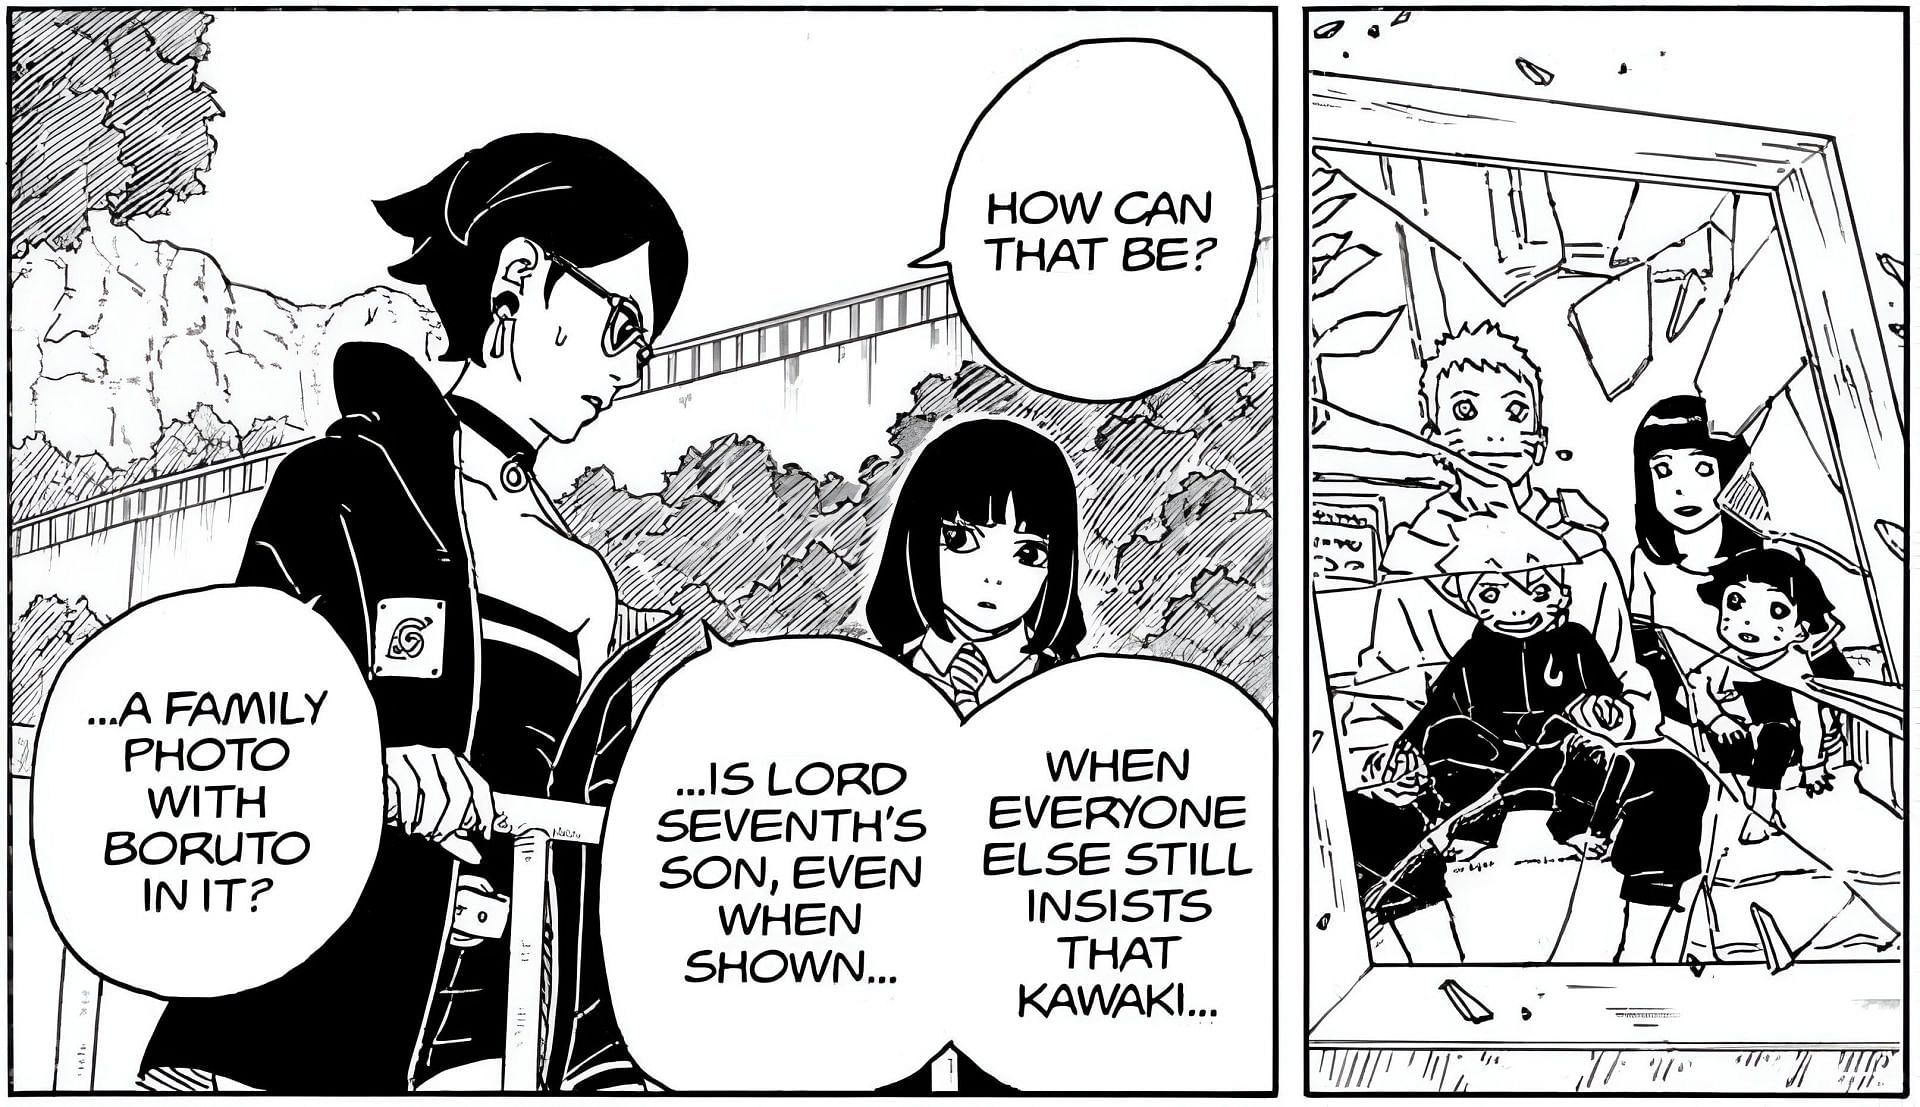 Sarada and Sumire as seen in the manga (Image via Shueisha)